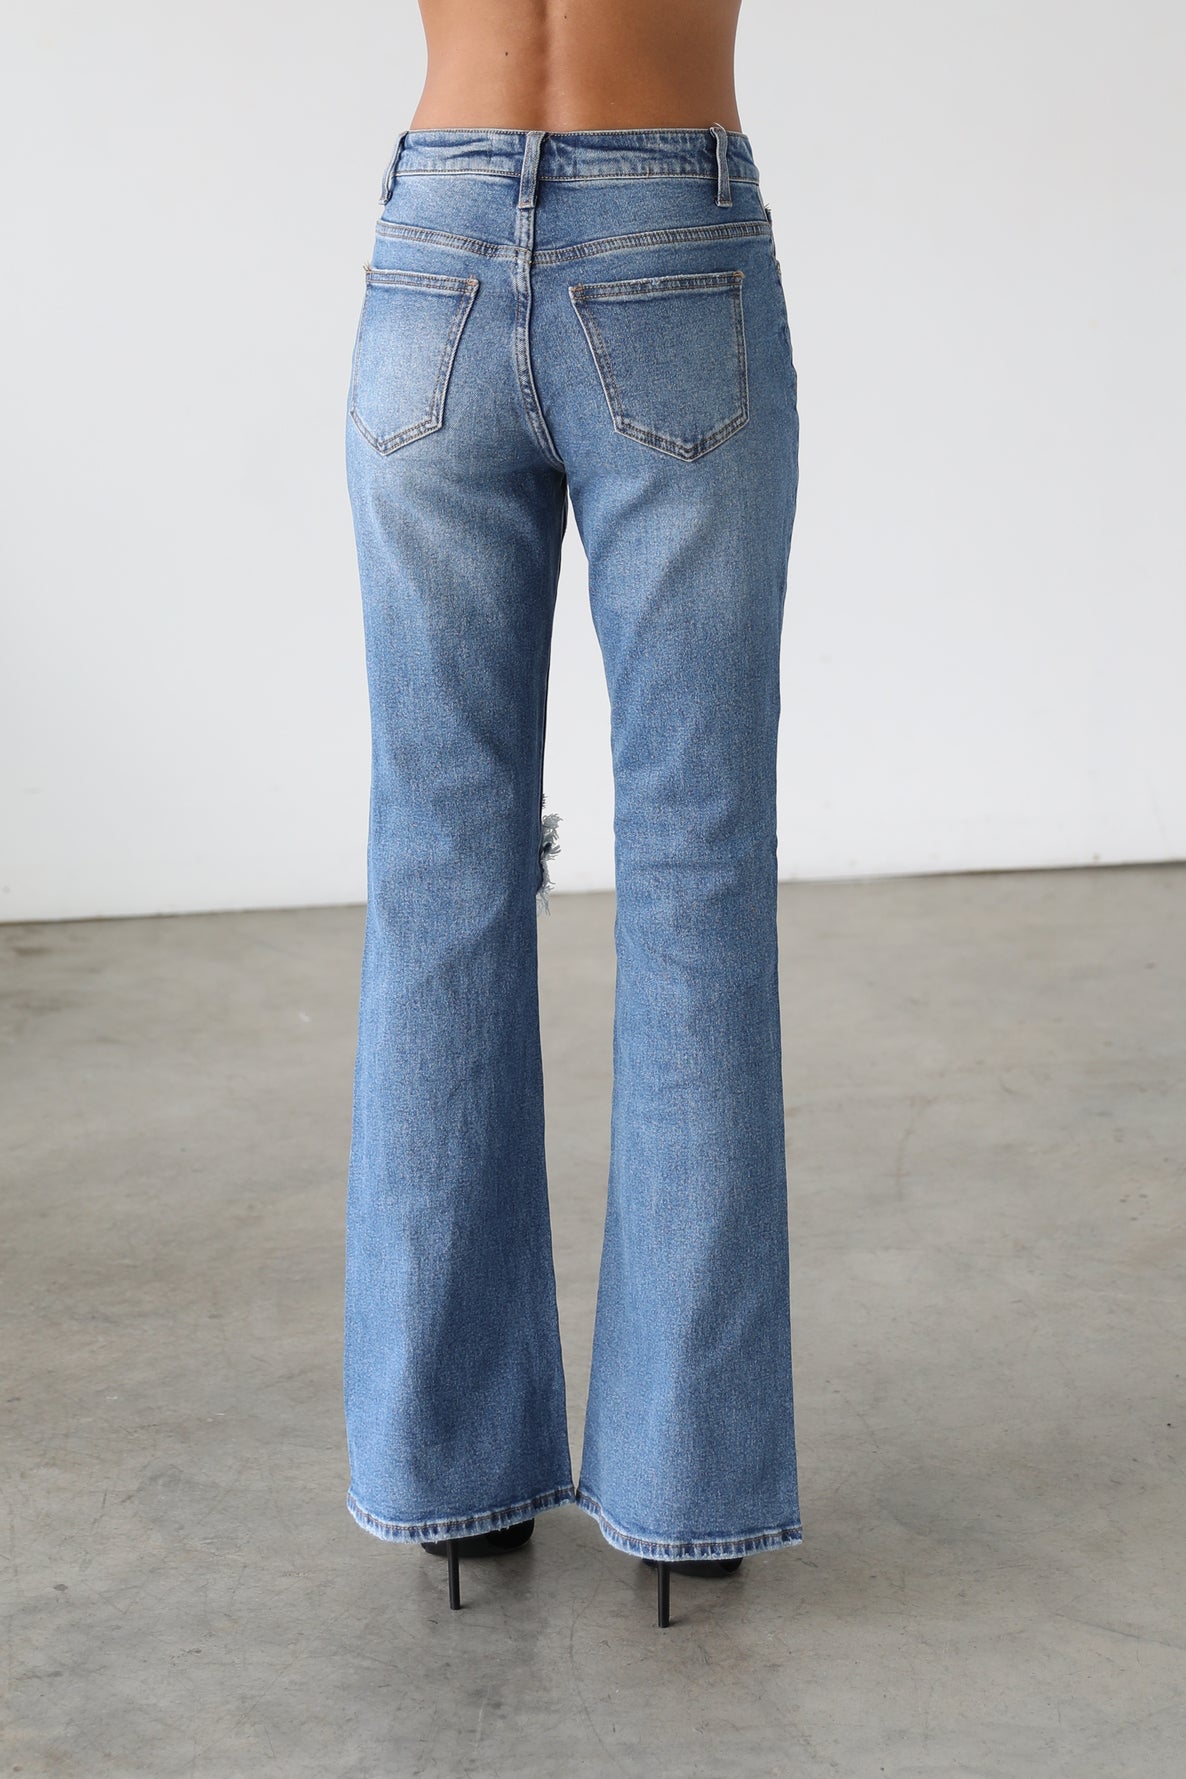 DOGMA DENIM - High Rise Flare Leg Denim Jeans - Medium-7101